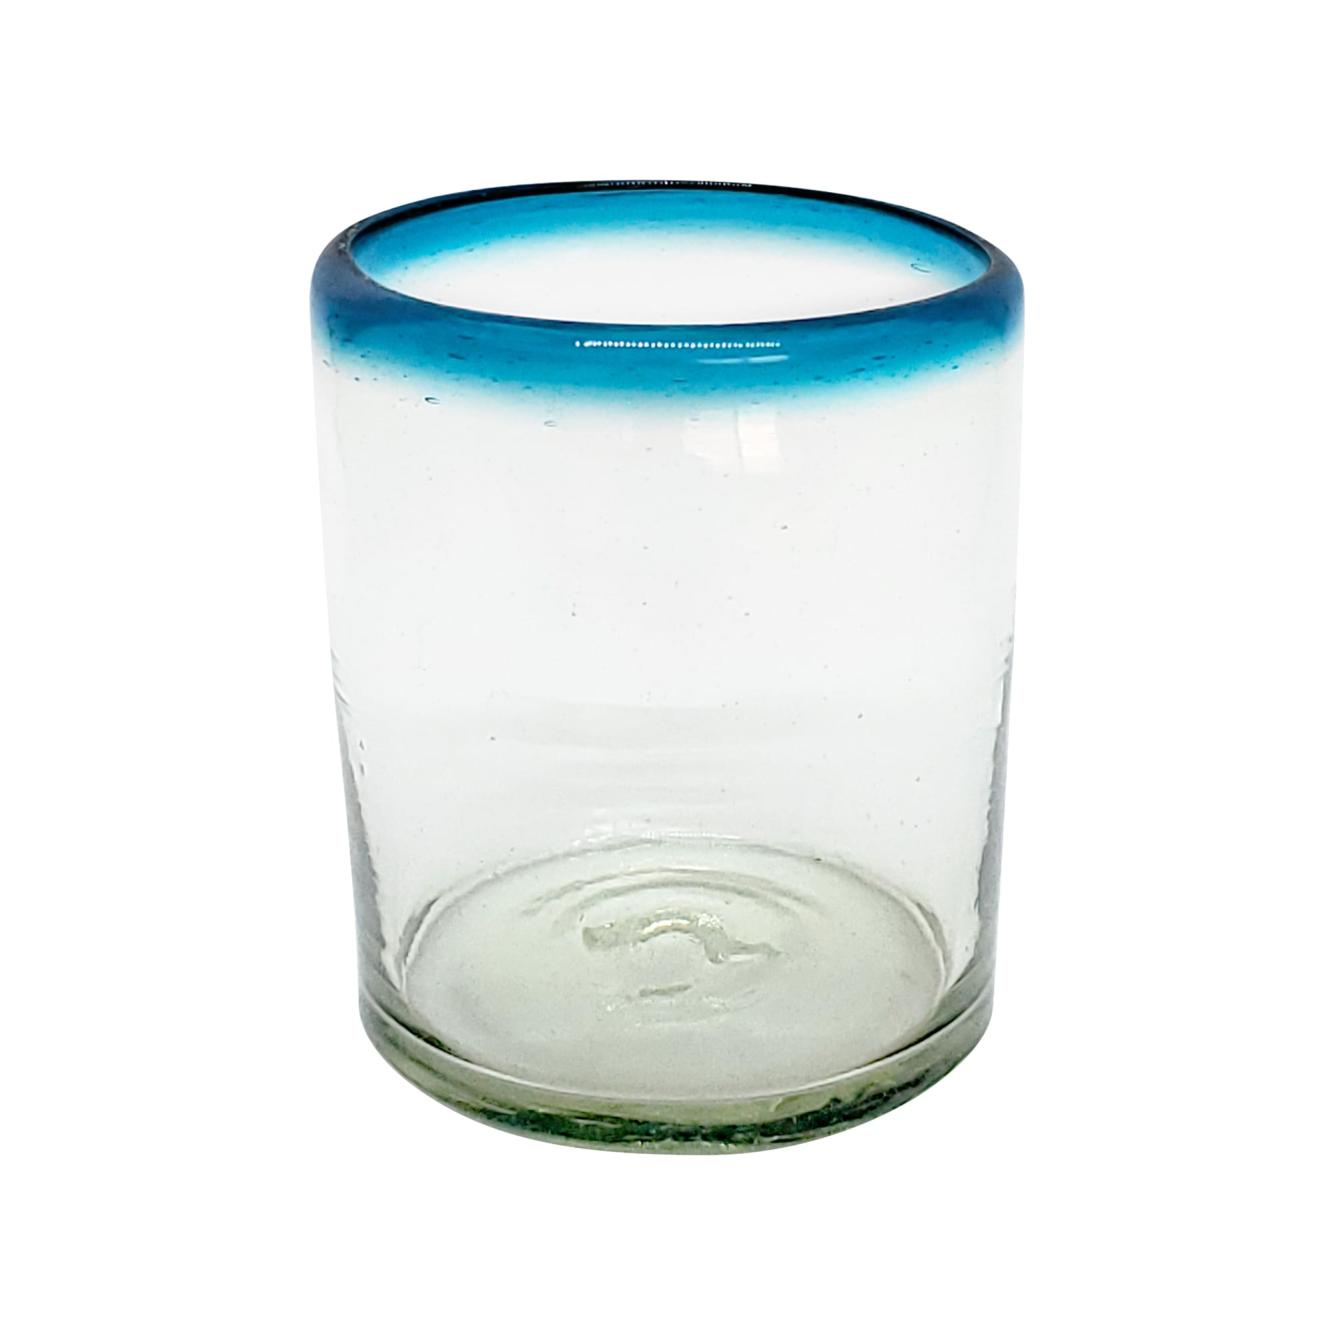 Borde de Color / Juego de 6 vasos chicos con borde azul aqua / Éstos vasos chicos son un gran complemento para su juego de jarra y vasos grandes.